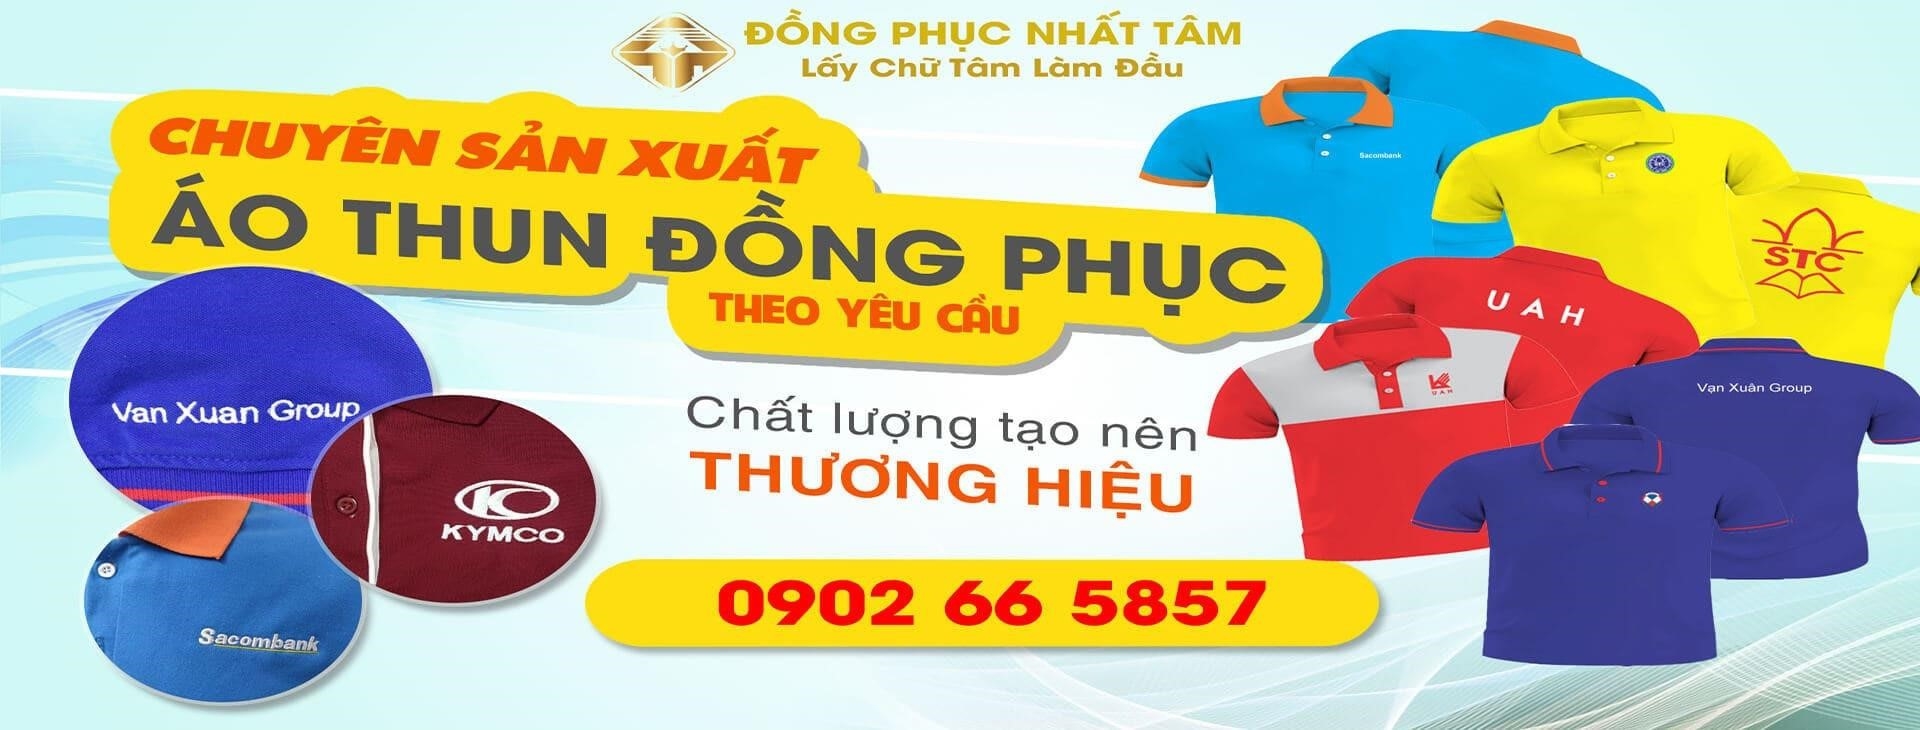 xưởng may đồng phục uy tín giá phải chăng tại tphcm | Toplist Việt Nam.